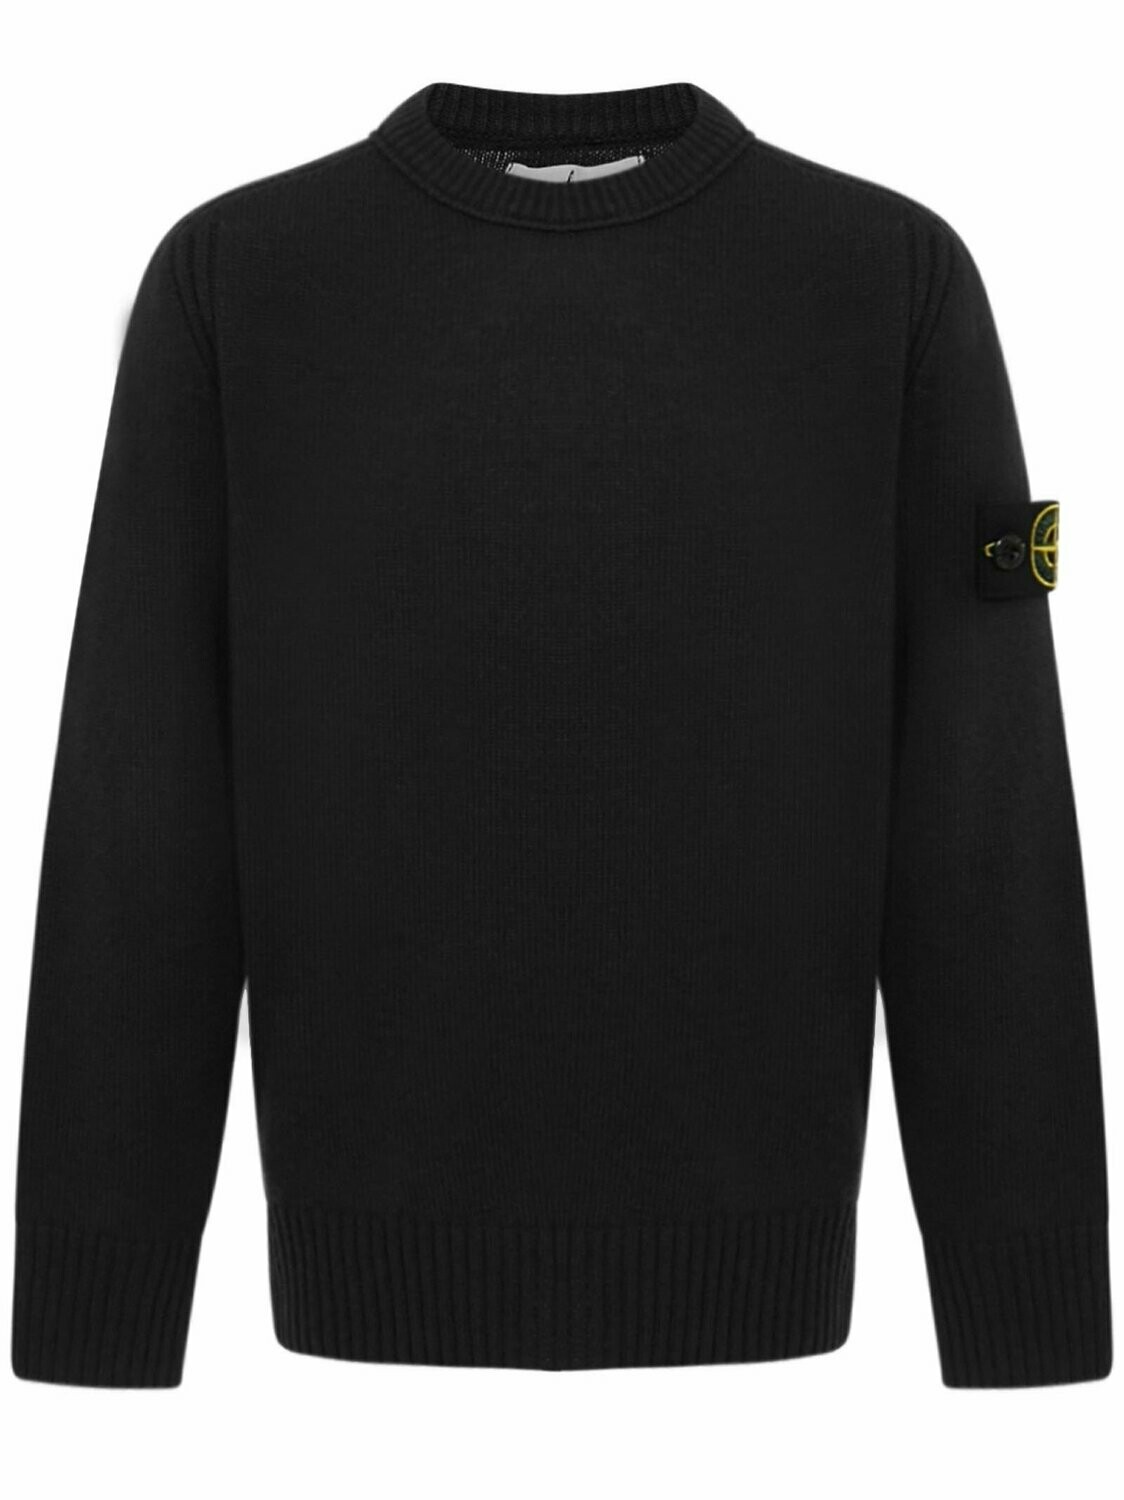 Stone Island - Golf girocollo nero in lana e cashmere, size: 8 anni